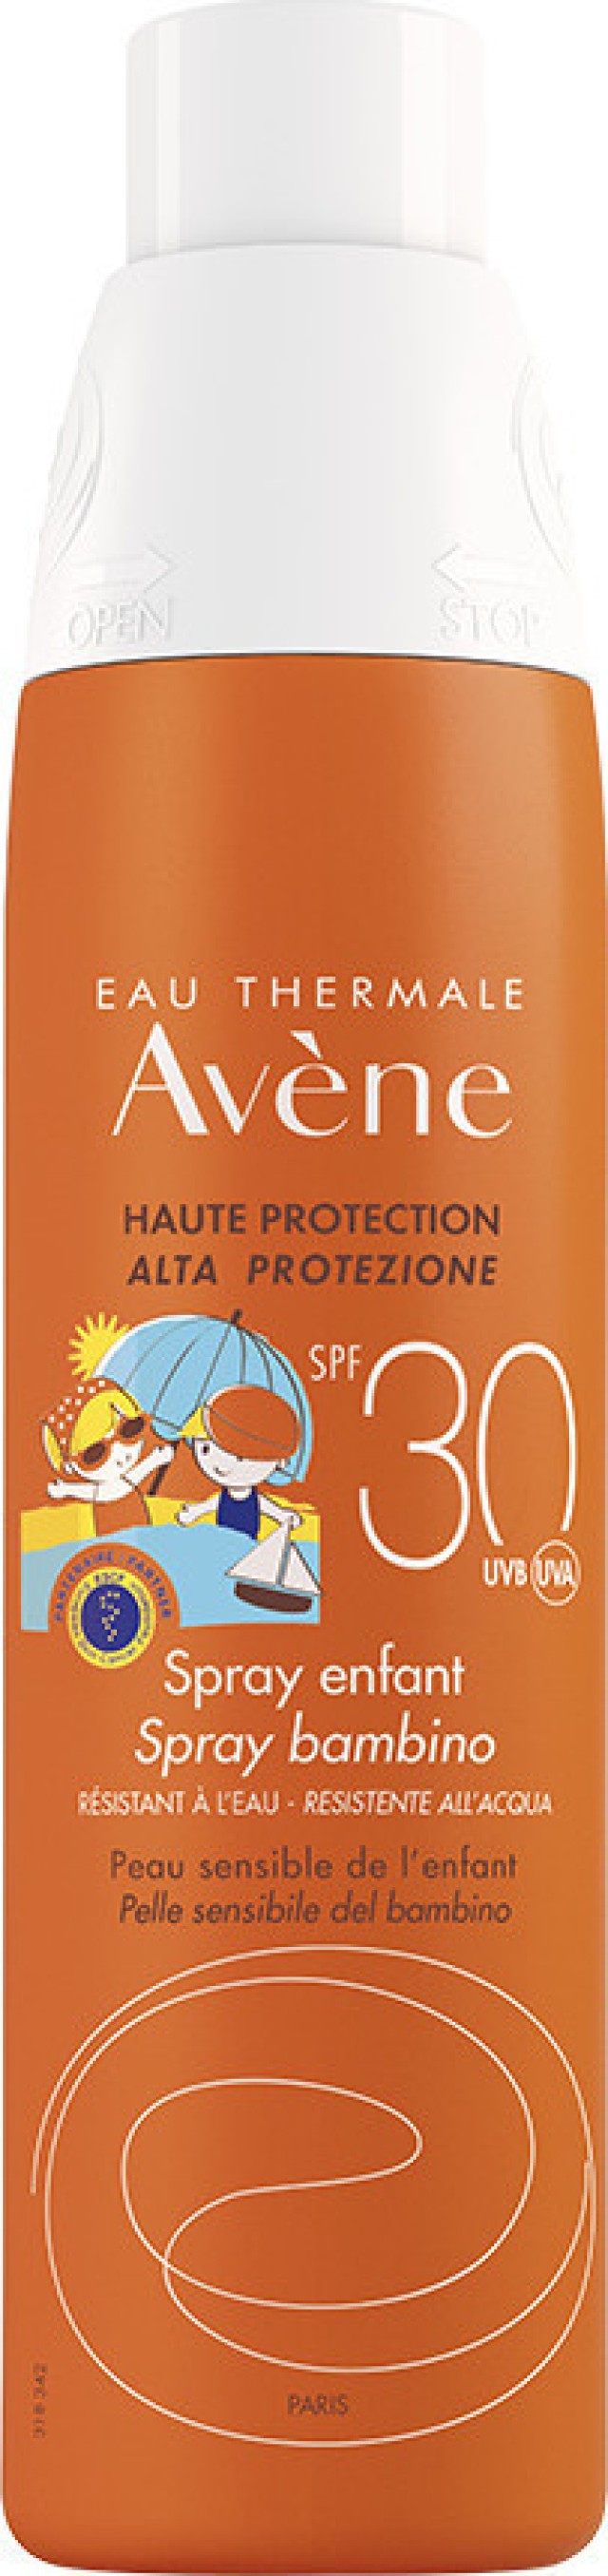 AVENE Solaire Enfant Spray Open & Stop SPF30+, Παιδικό Αντιηλιακό Σπρέι Χωρίς Άρωμα, 200ml